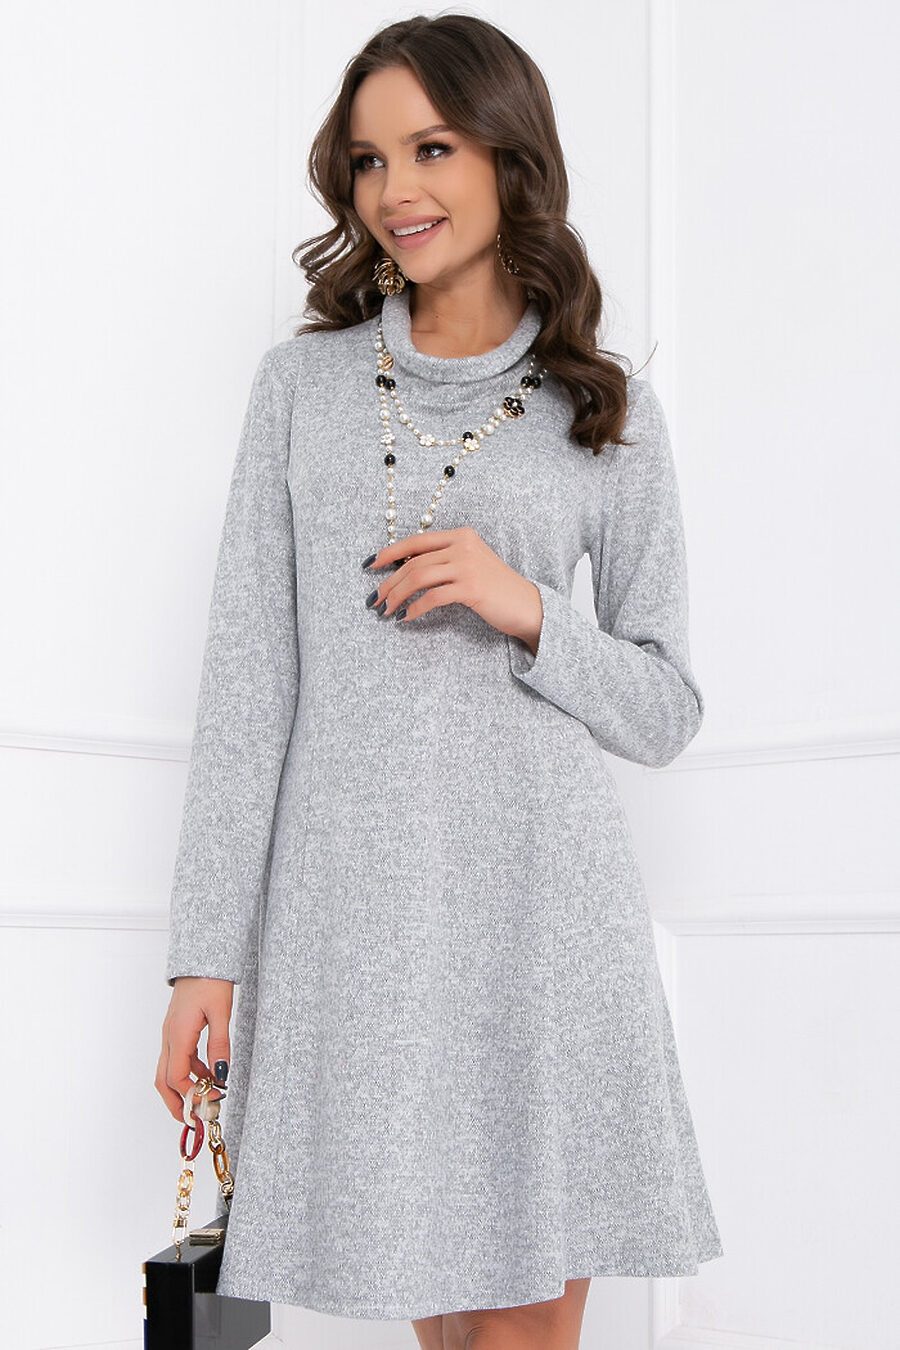 Платье BELLOVERA (822938), купить в Moyo.moda